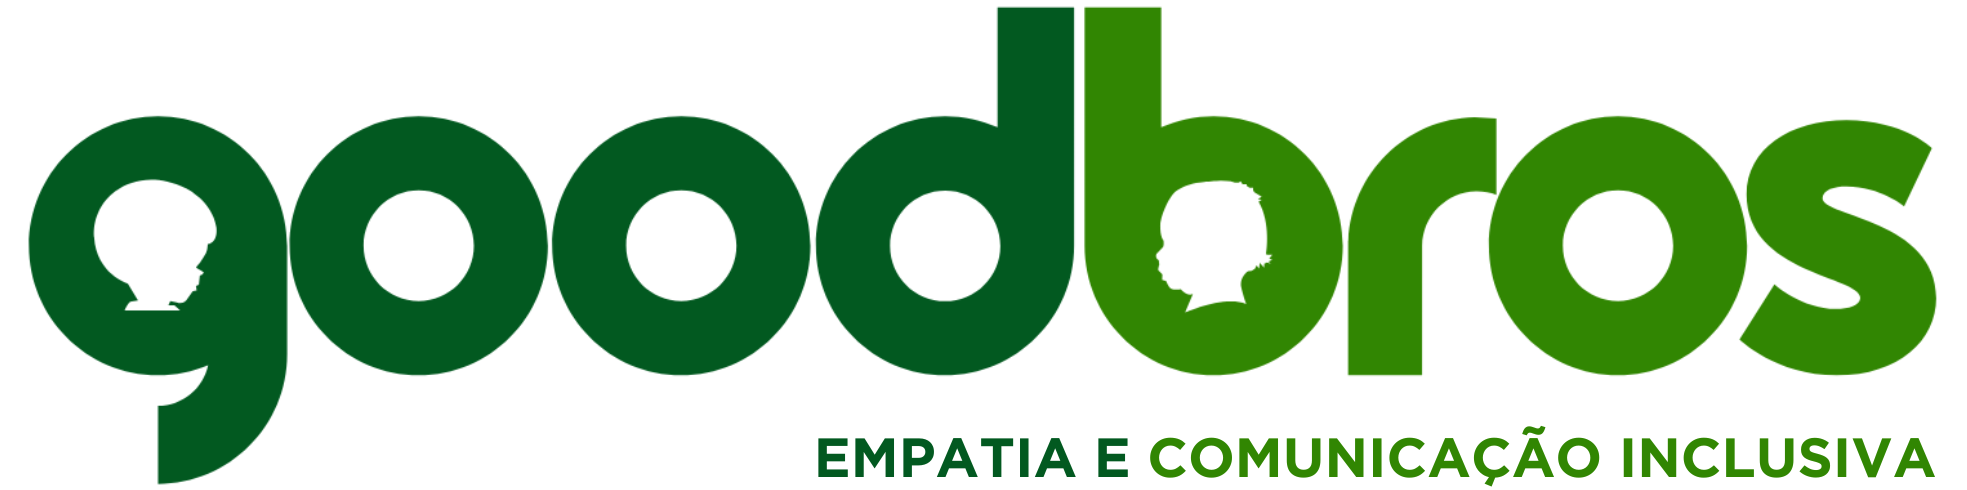 Logotipo da goodbros